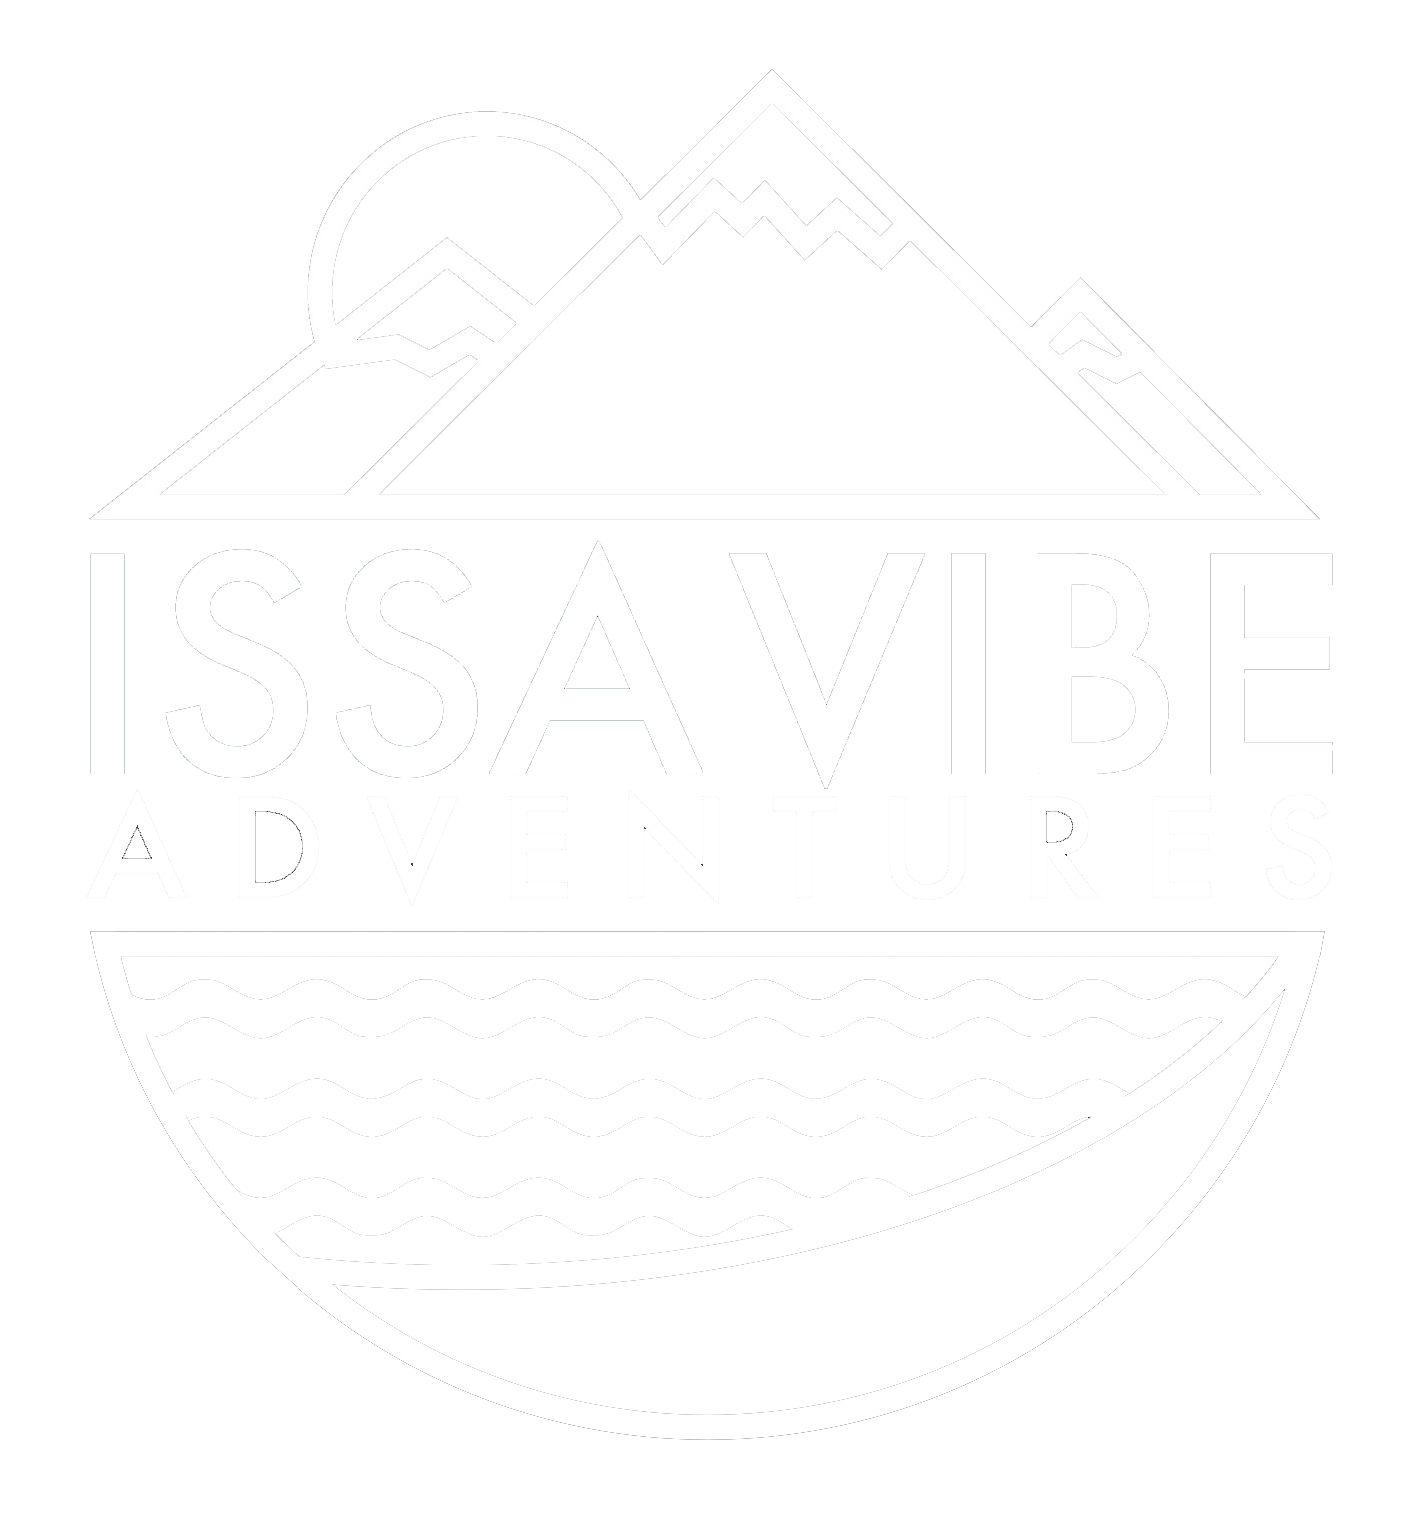 Issa Vibe Adventures